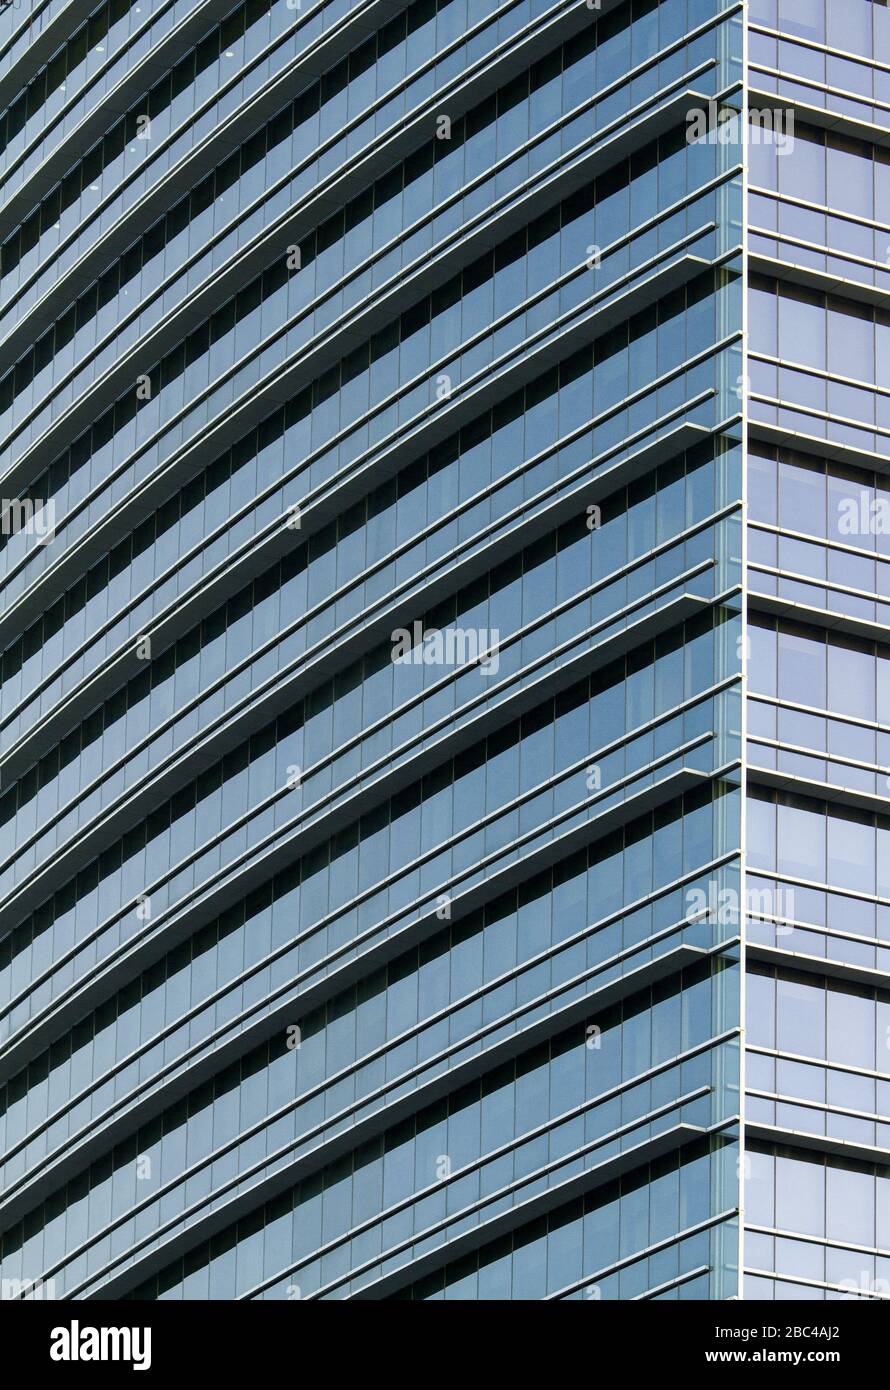 Ritratto in bianco e nero di un edificio in vetro con balconi. Architettura minimalista con motivi ripetuti Foto Stock